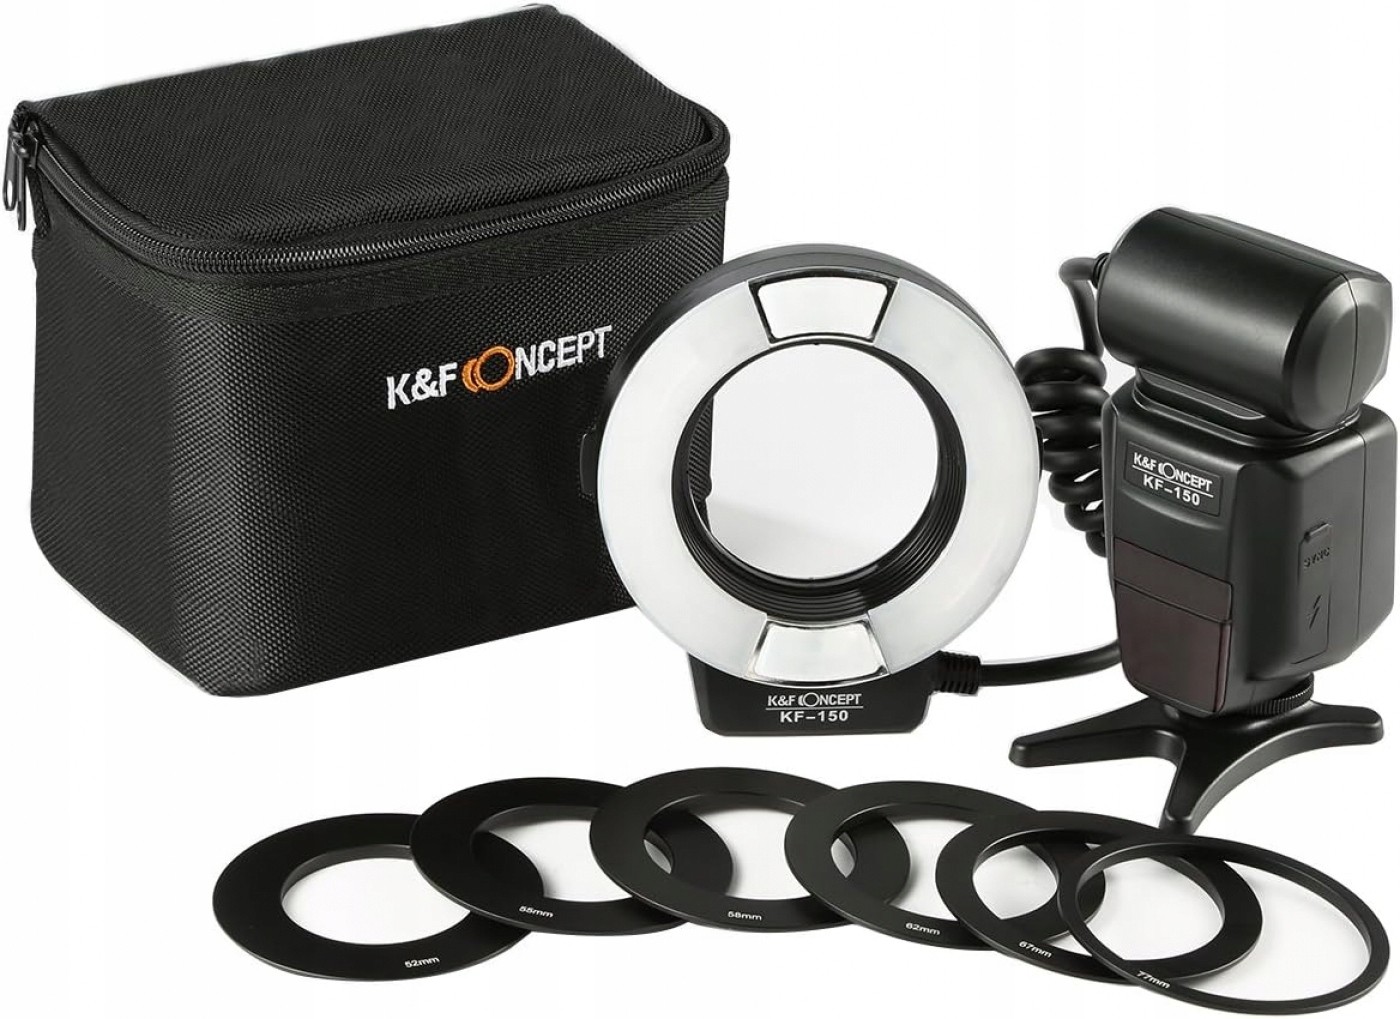 K&f Concept 150 Macro kruhové světlo Nikon